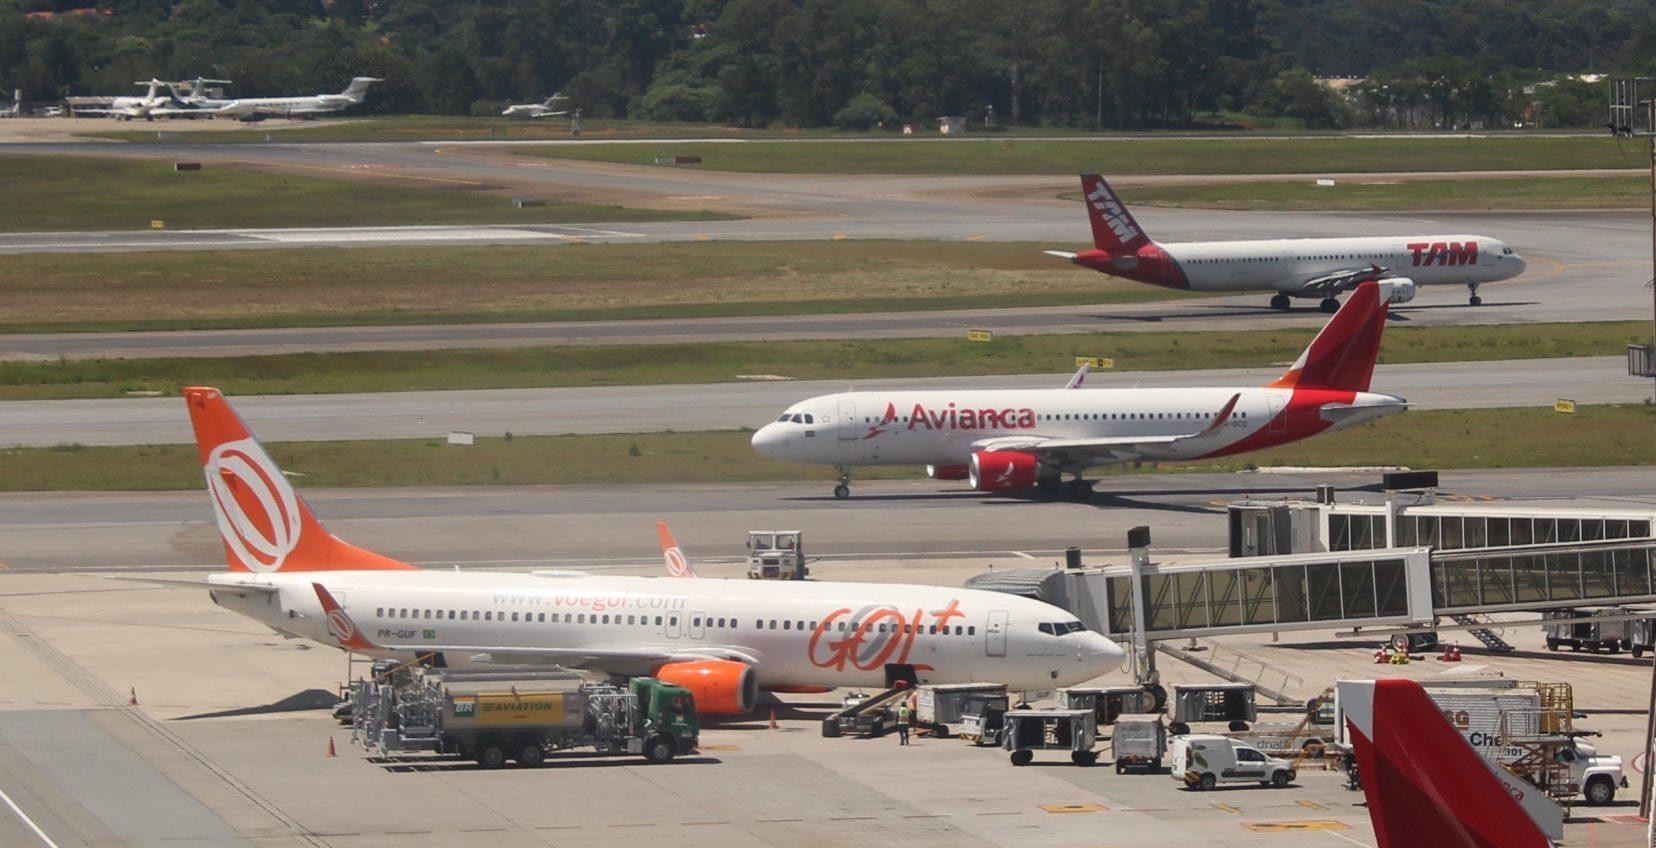 Coronavírus: site suspende venda de passagens aéreas para Goiânia